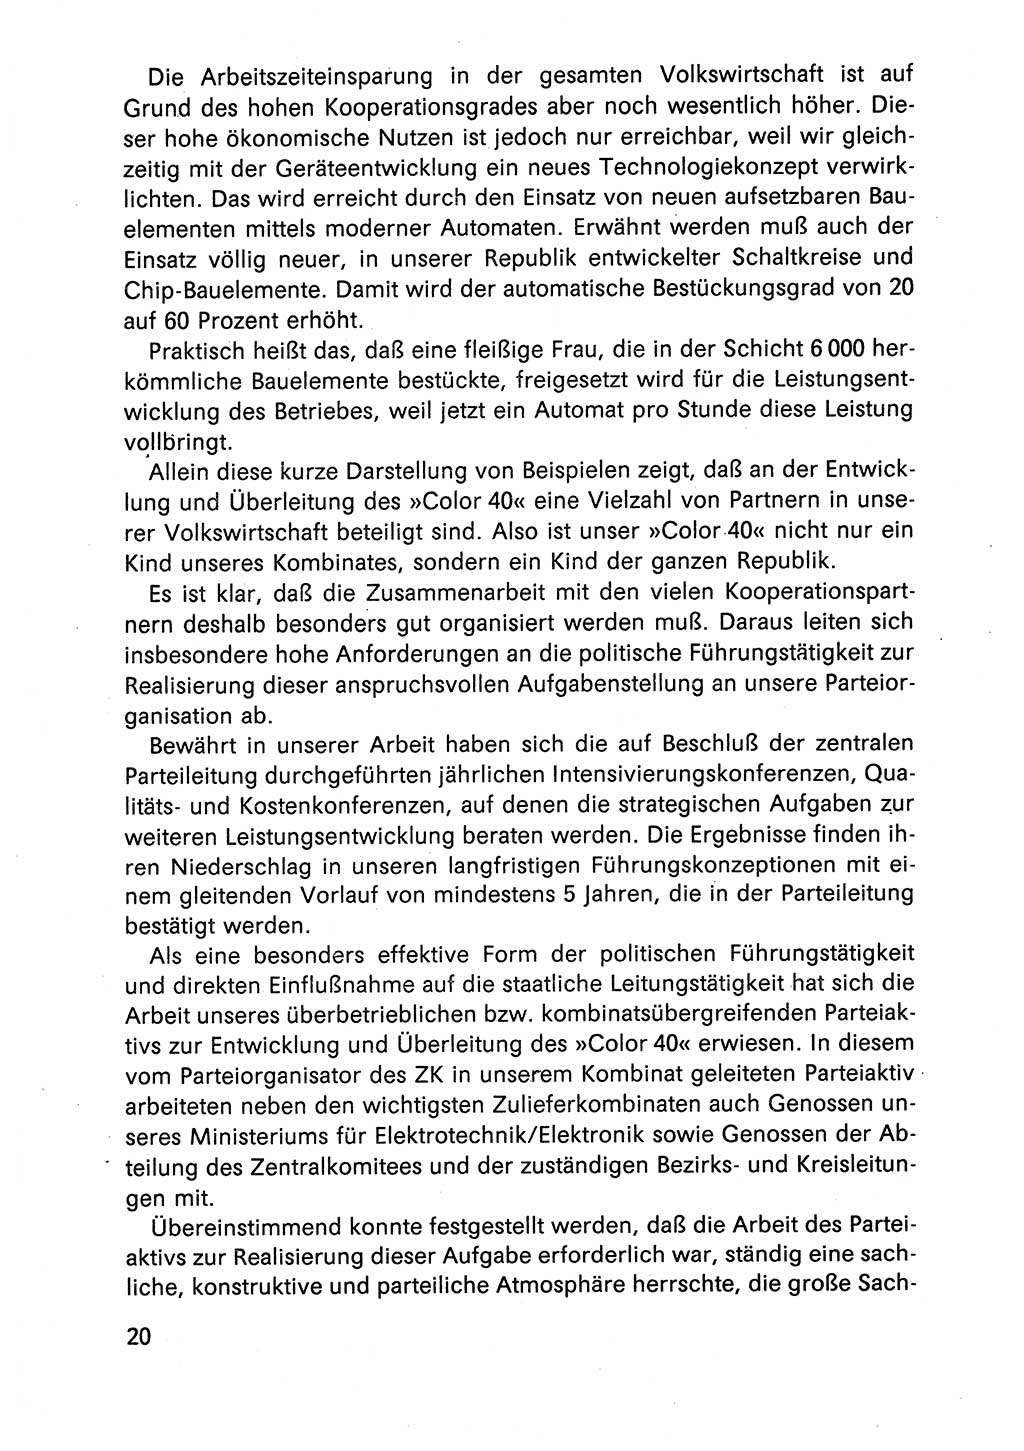 Diskussionsreden, 8. Tagung des ZK (Zentralkomitee) der SED (Sozialistische Einheitspartei Deutschlands) [Deutsche Demokratische Republik (DDR)] 1989, Seite 20 (Disk.-Red. 8. Tg. ZK SED DDR 1989, S. 20)